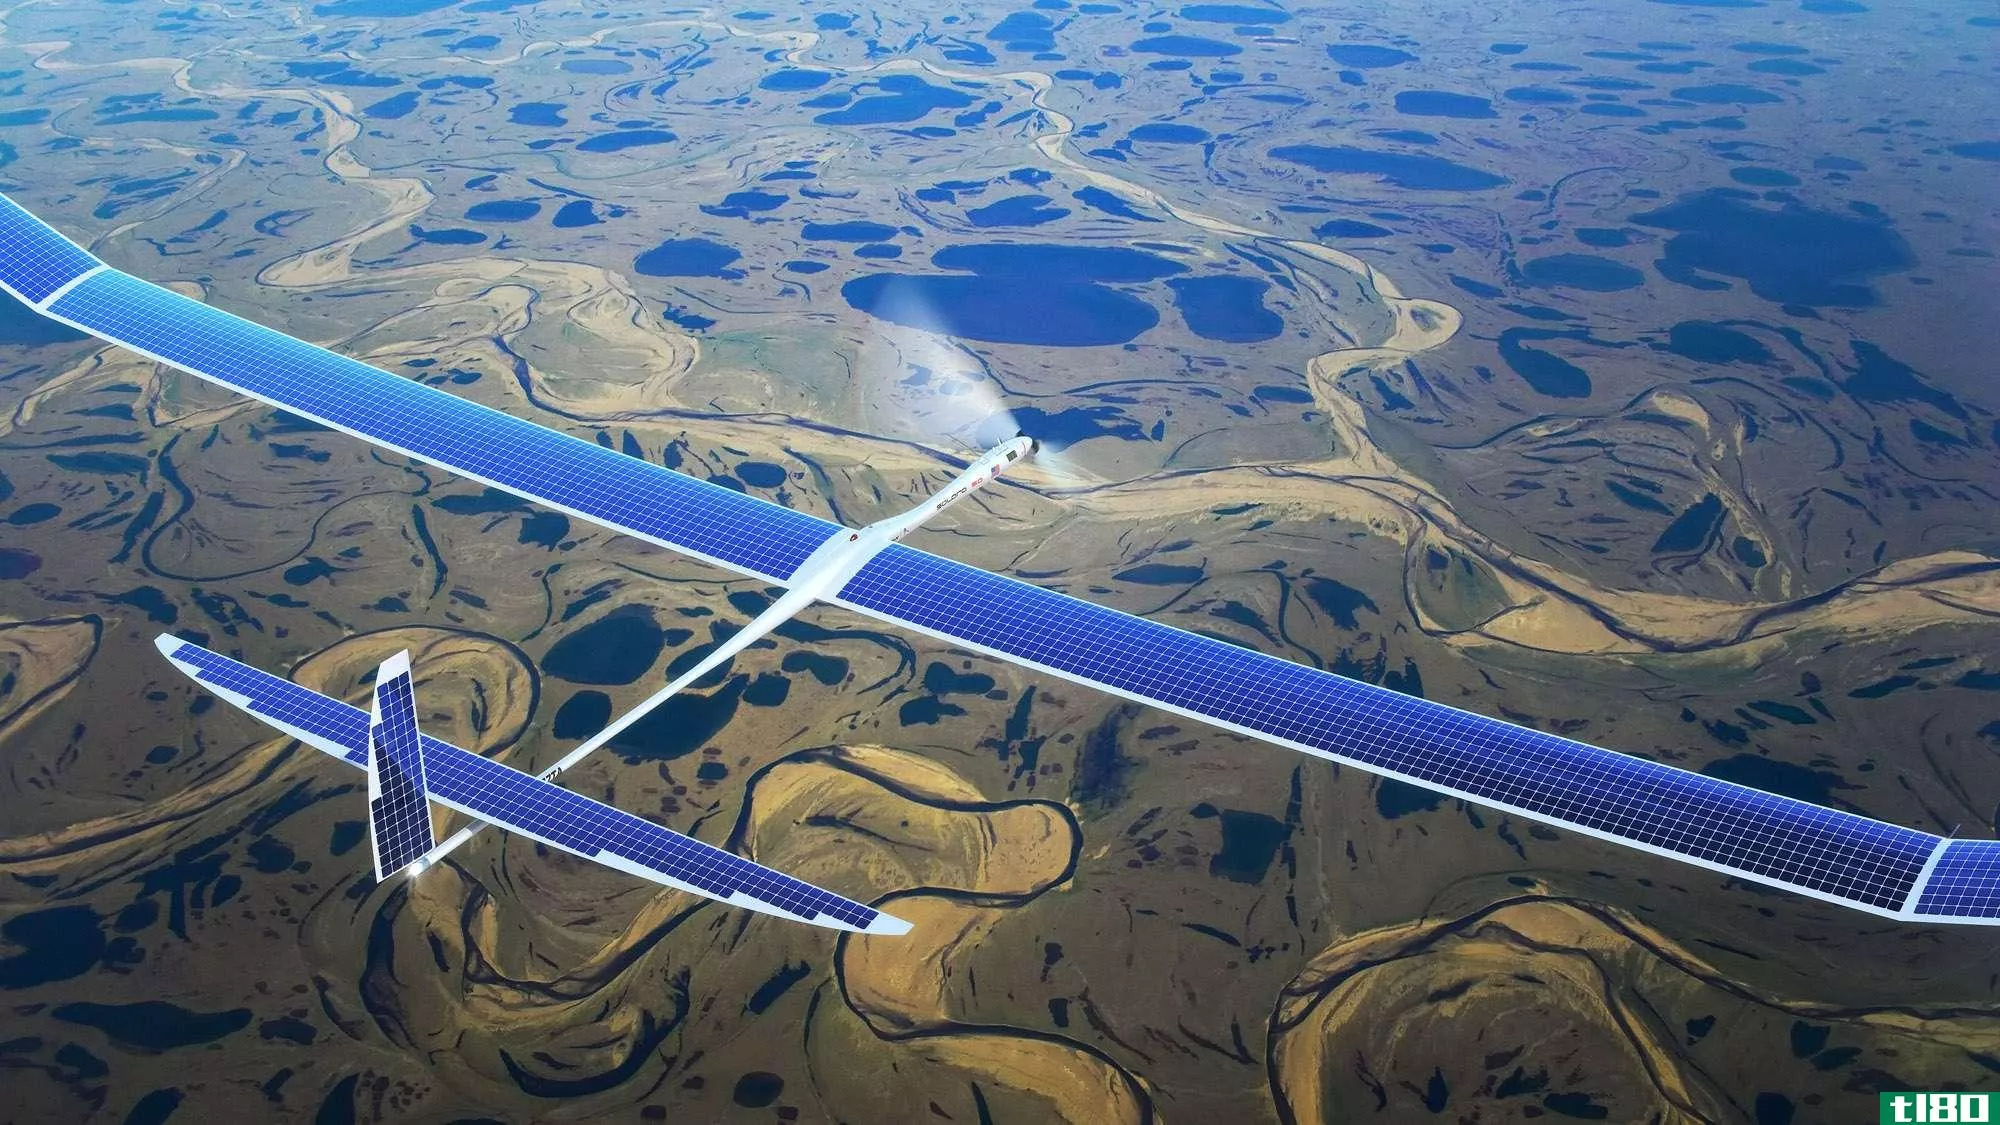 谷歌的skybender项目旨在通过太阳能无人机发射5g互联网